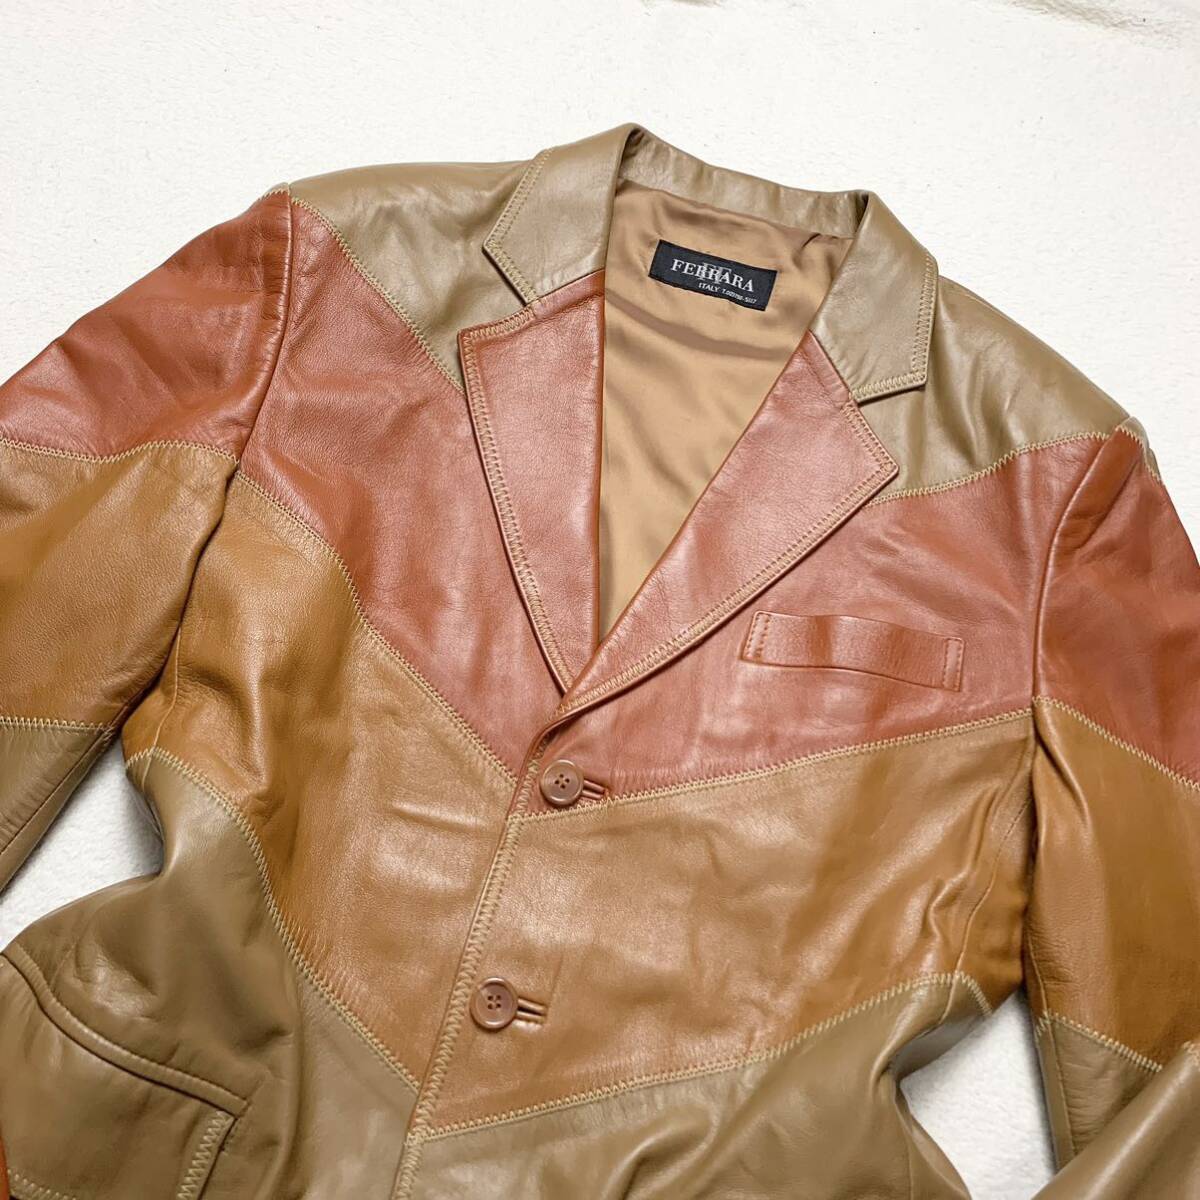  редкий Lfela-la[ первоклассный. овечья кожа ]FERRARA tailored jacket лоскутное шитье Rider's кожаная куртка овчина кожа ягненка Brown 1 иен 